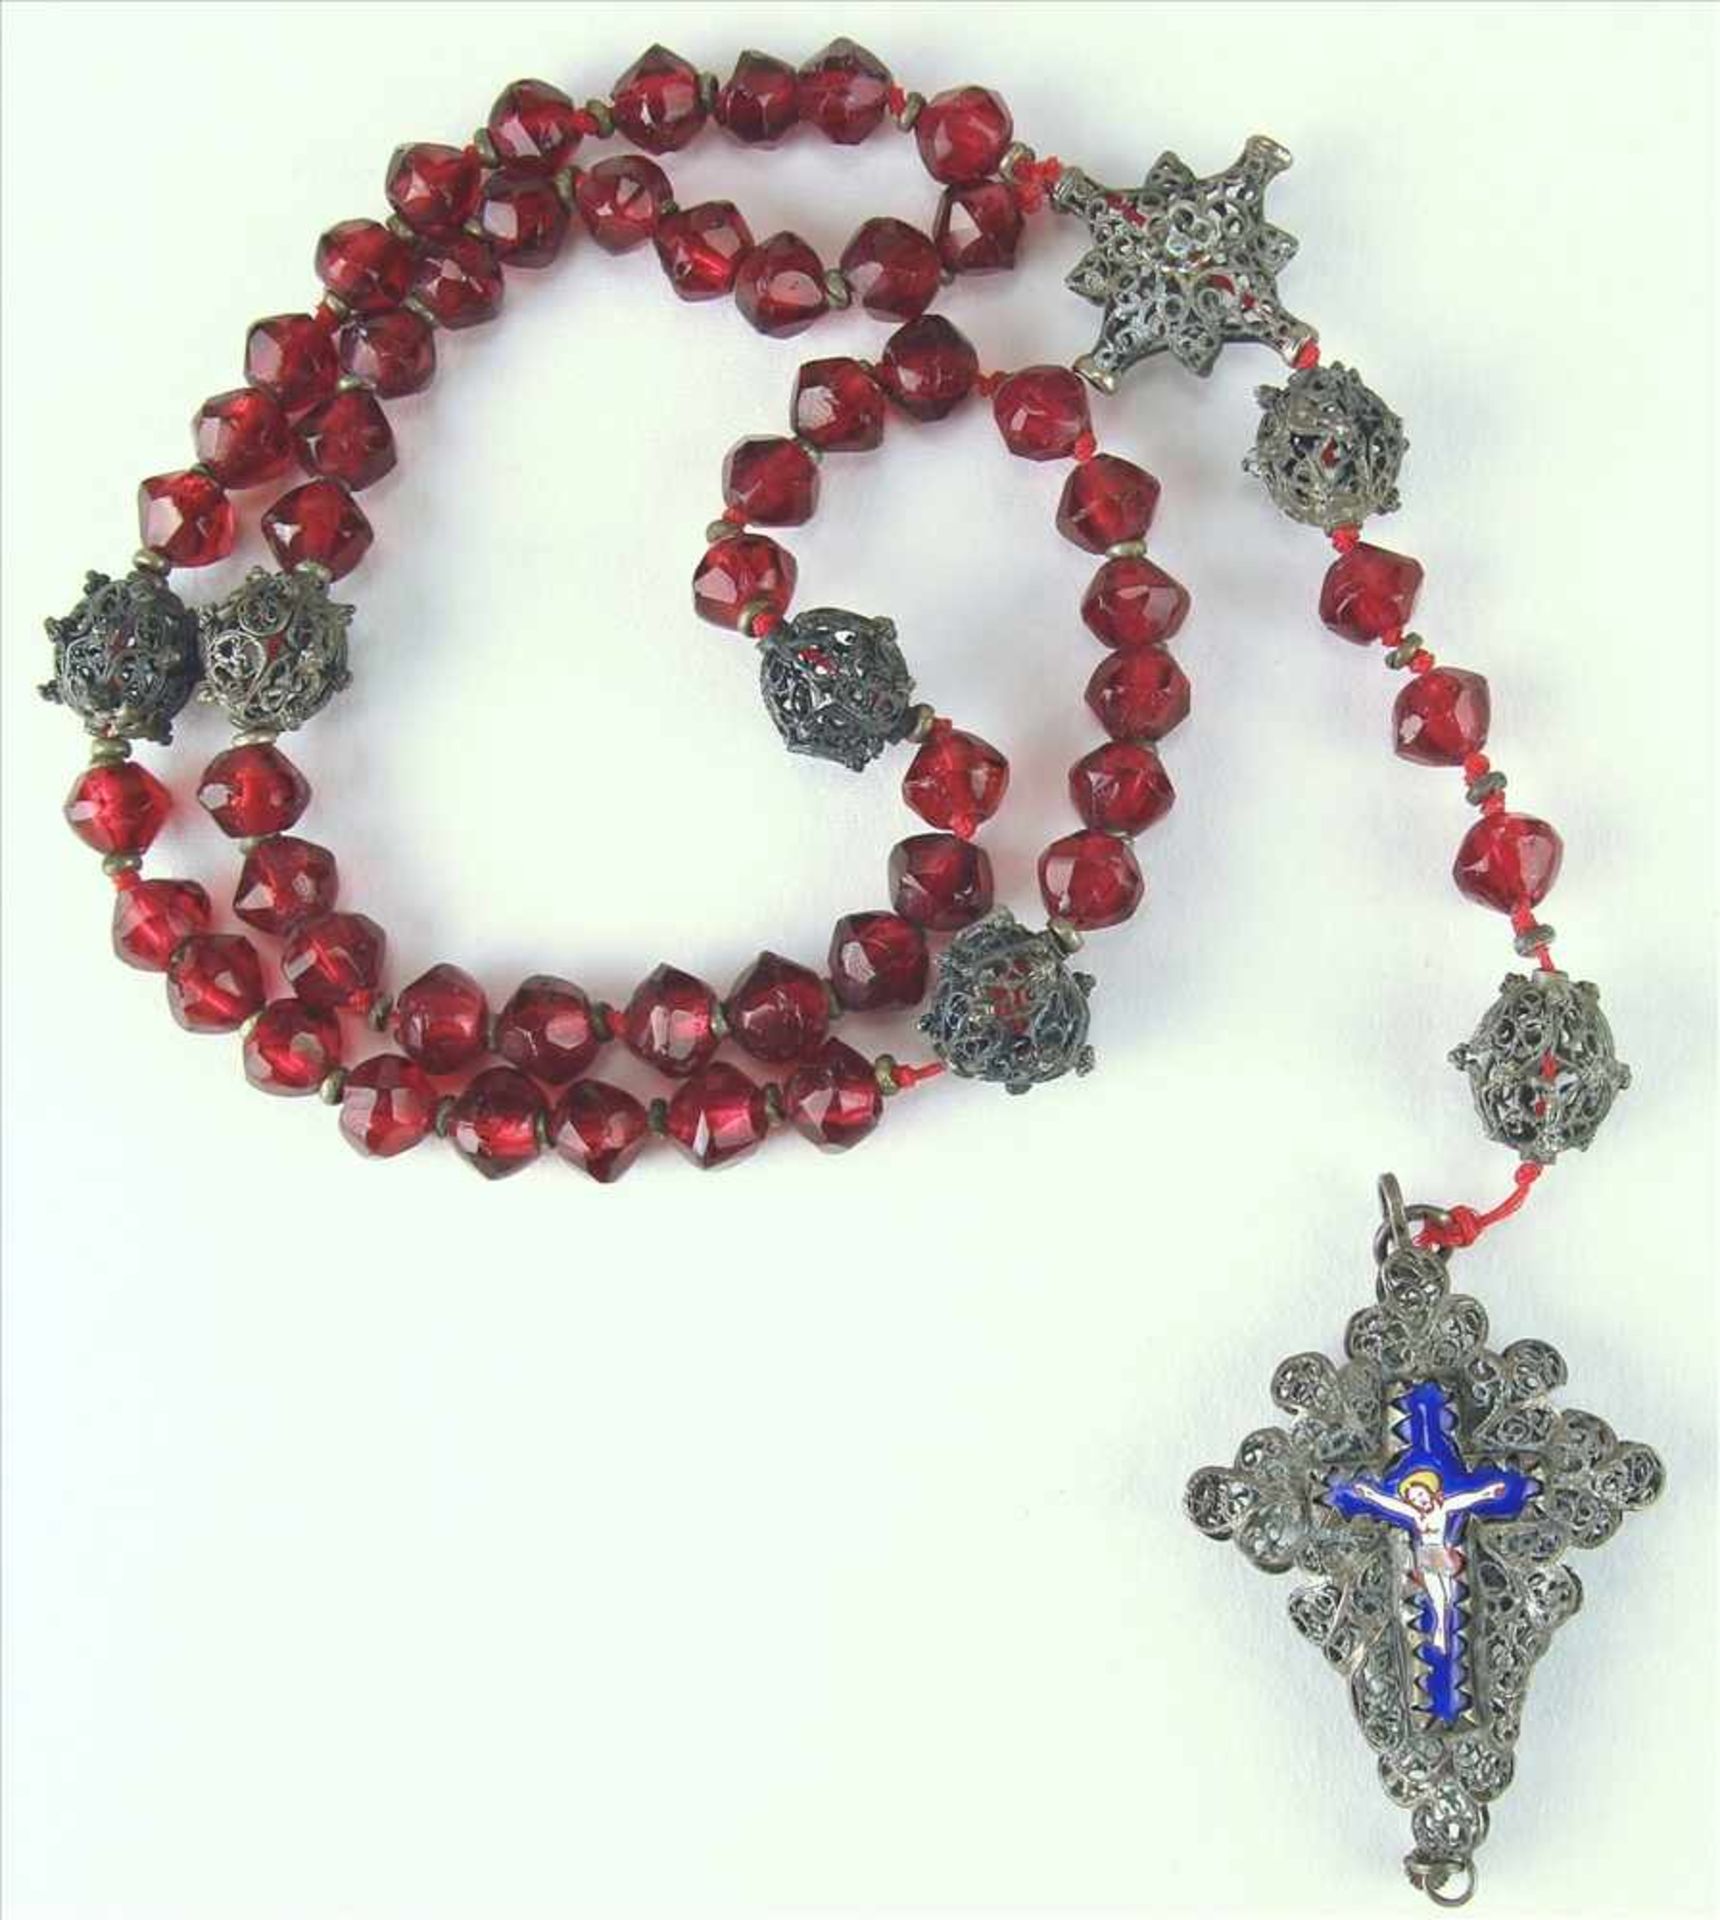 RosenkranzSüddeutsch 19. Jh. Kette mit roten (Glas)steinen und Silberkugeln. Kreuz mit